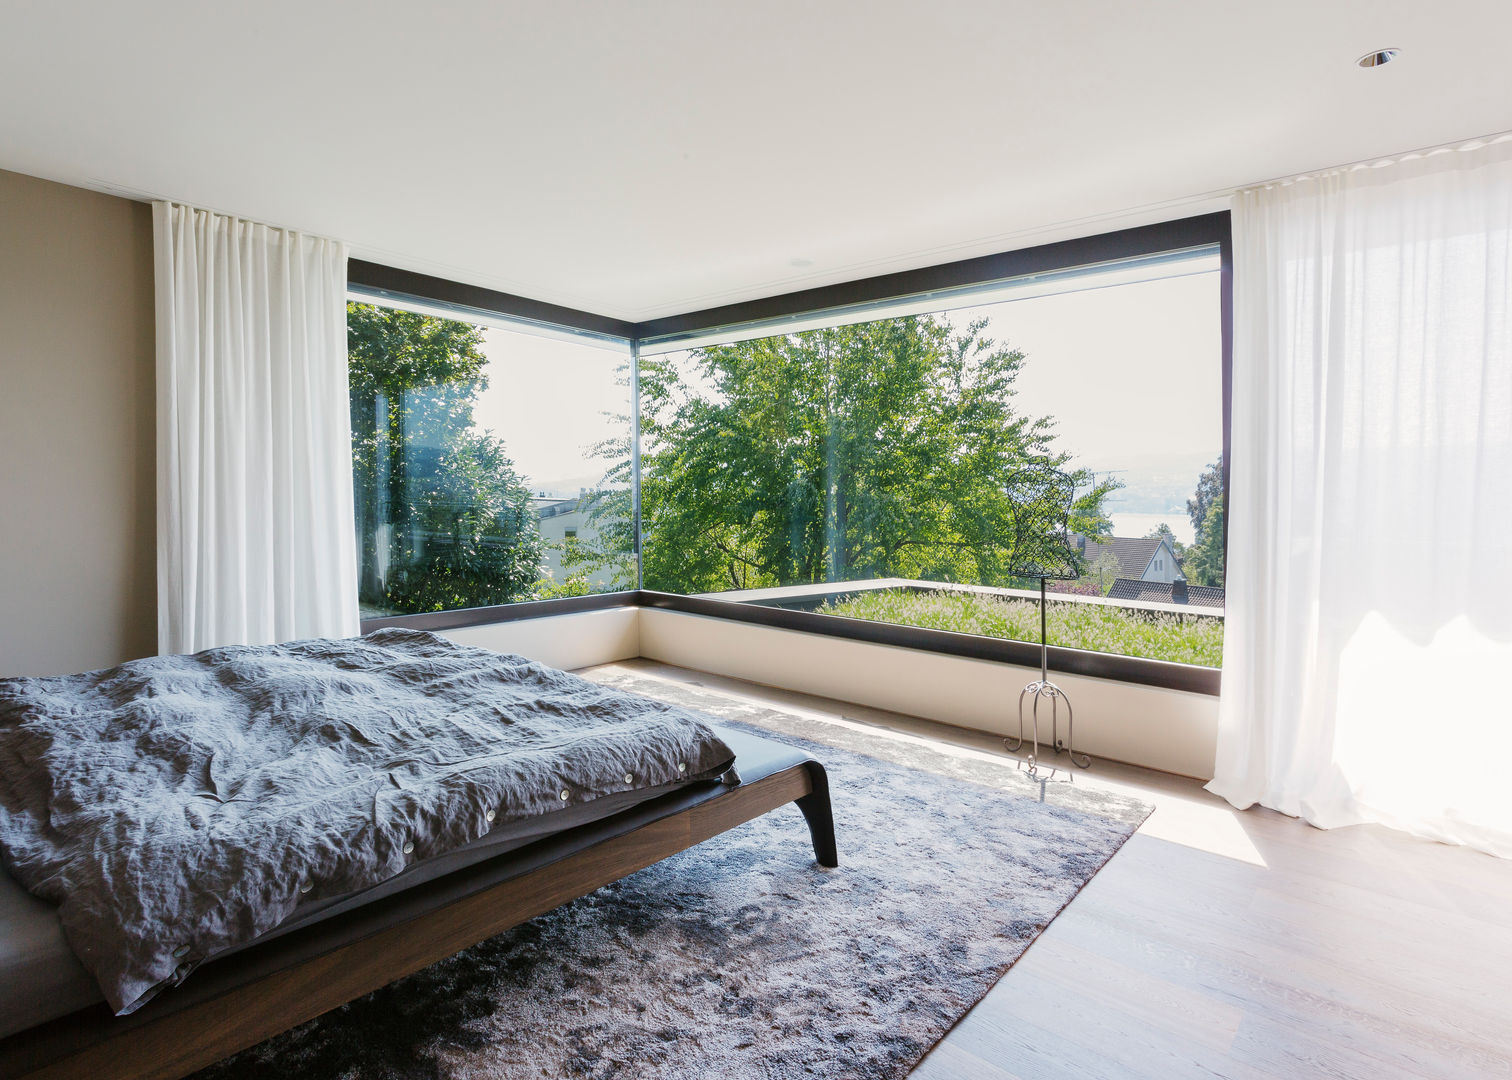 Objekt 336: Traumhaftes Einfamilienhaus mit Panoramablick , meier architekten zürich meier architekten zürich ห้องนอน